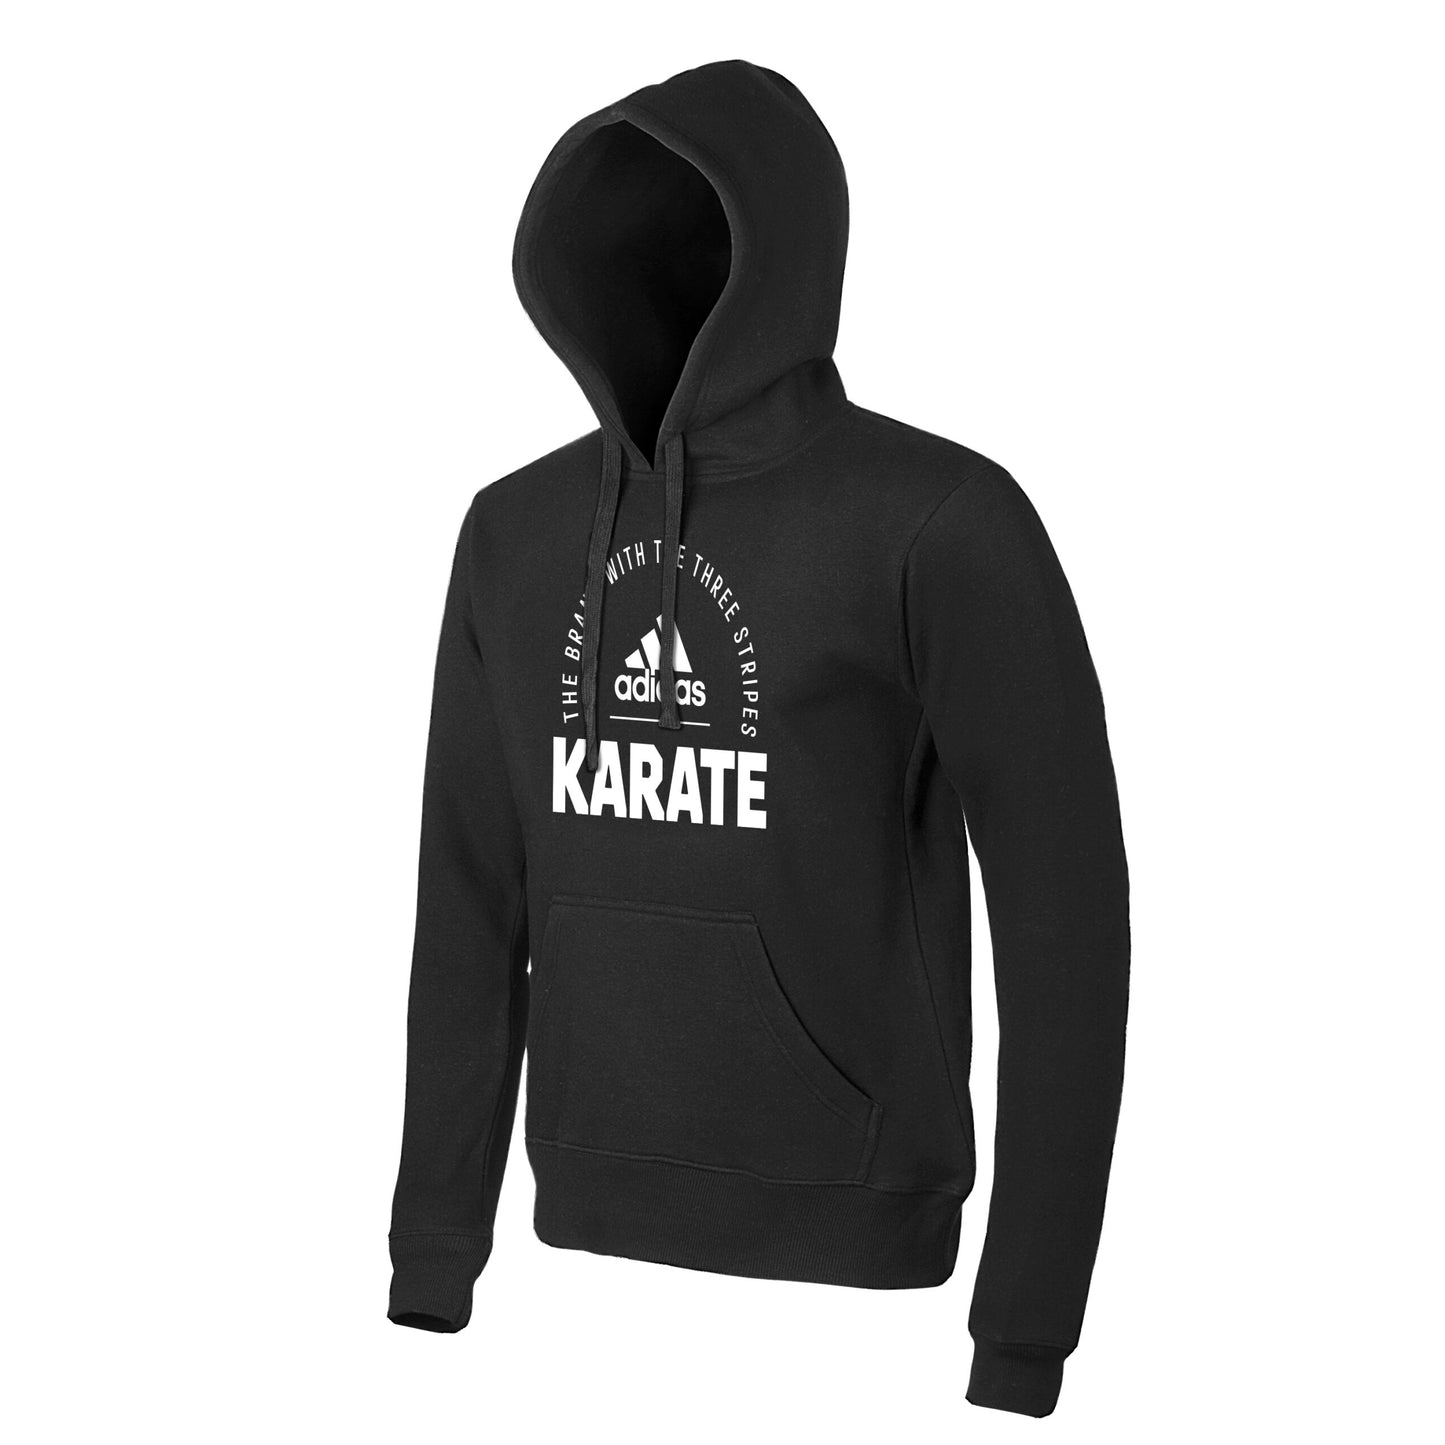 Clhd21 K Adidas Karate Hoody Black 02